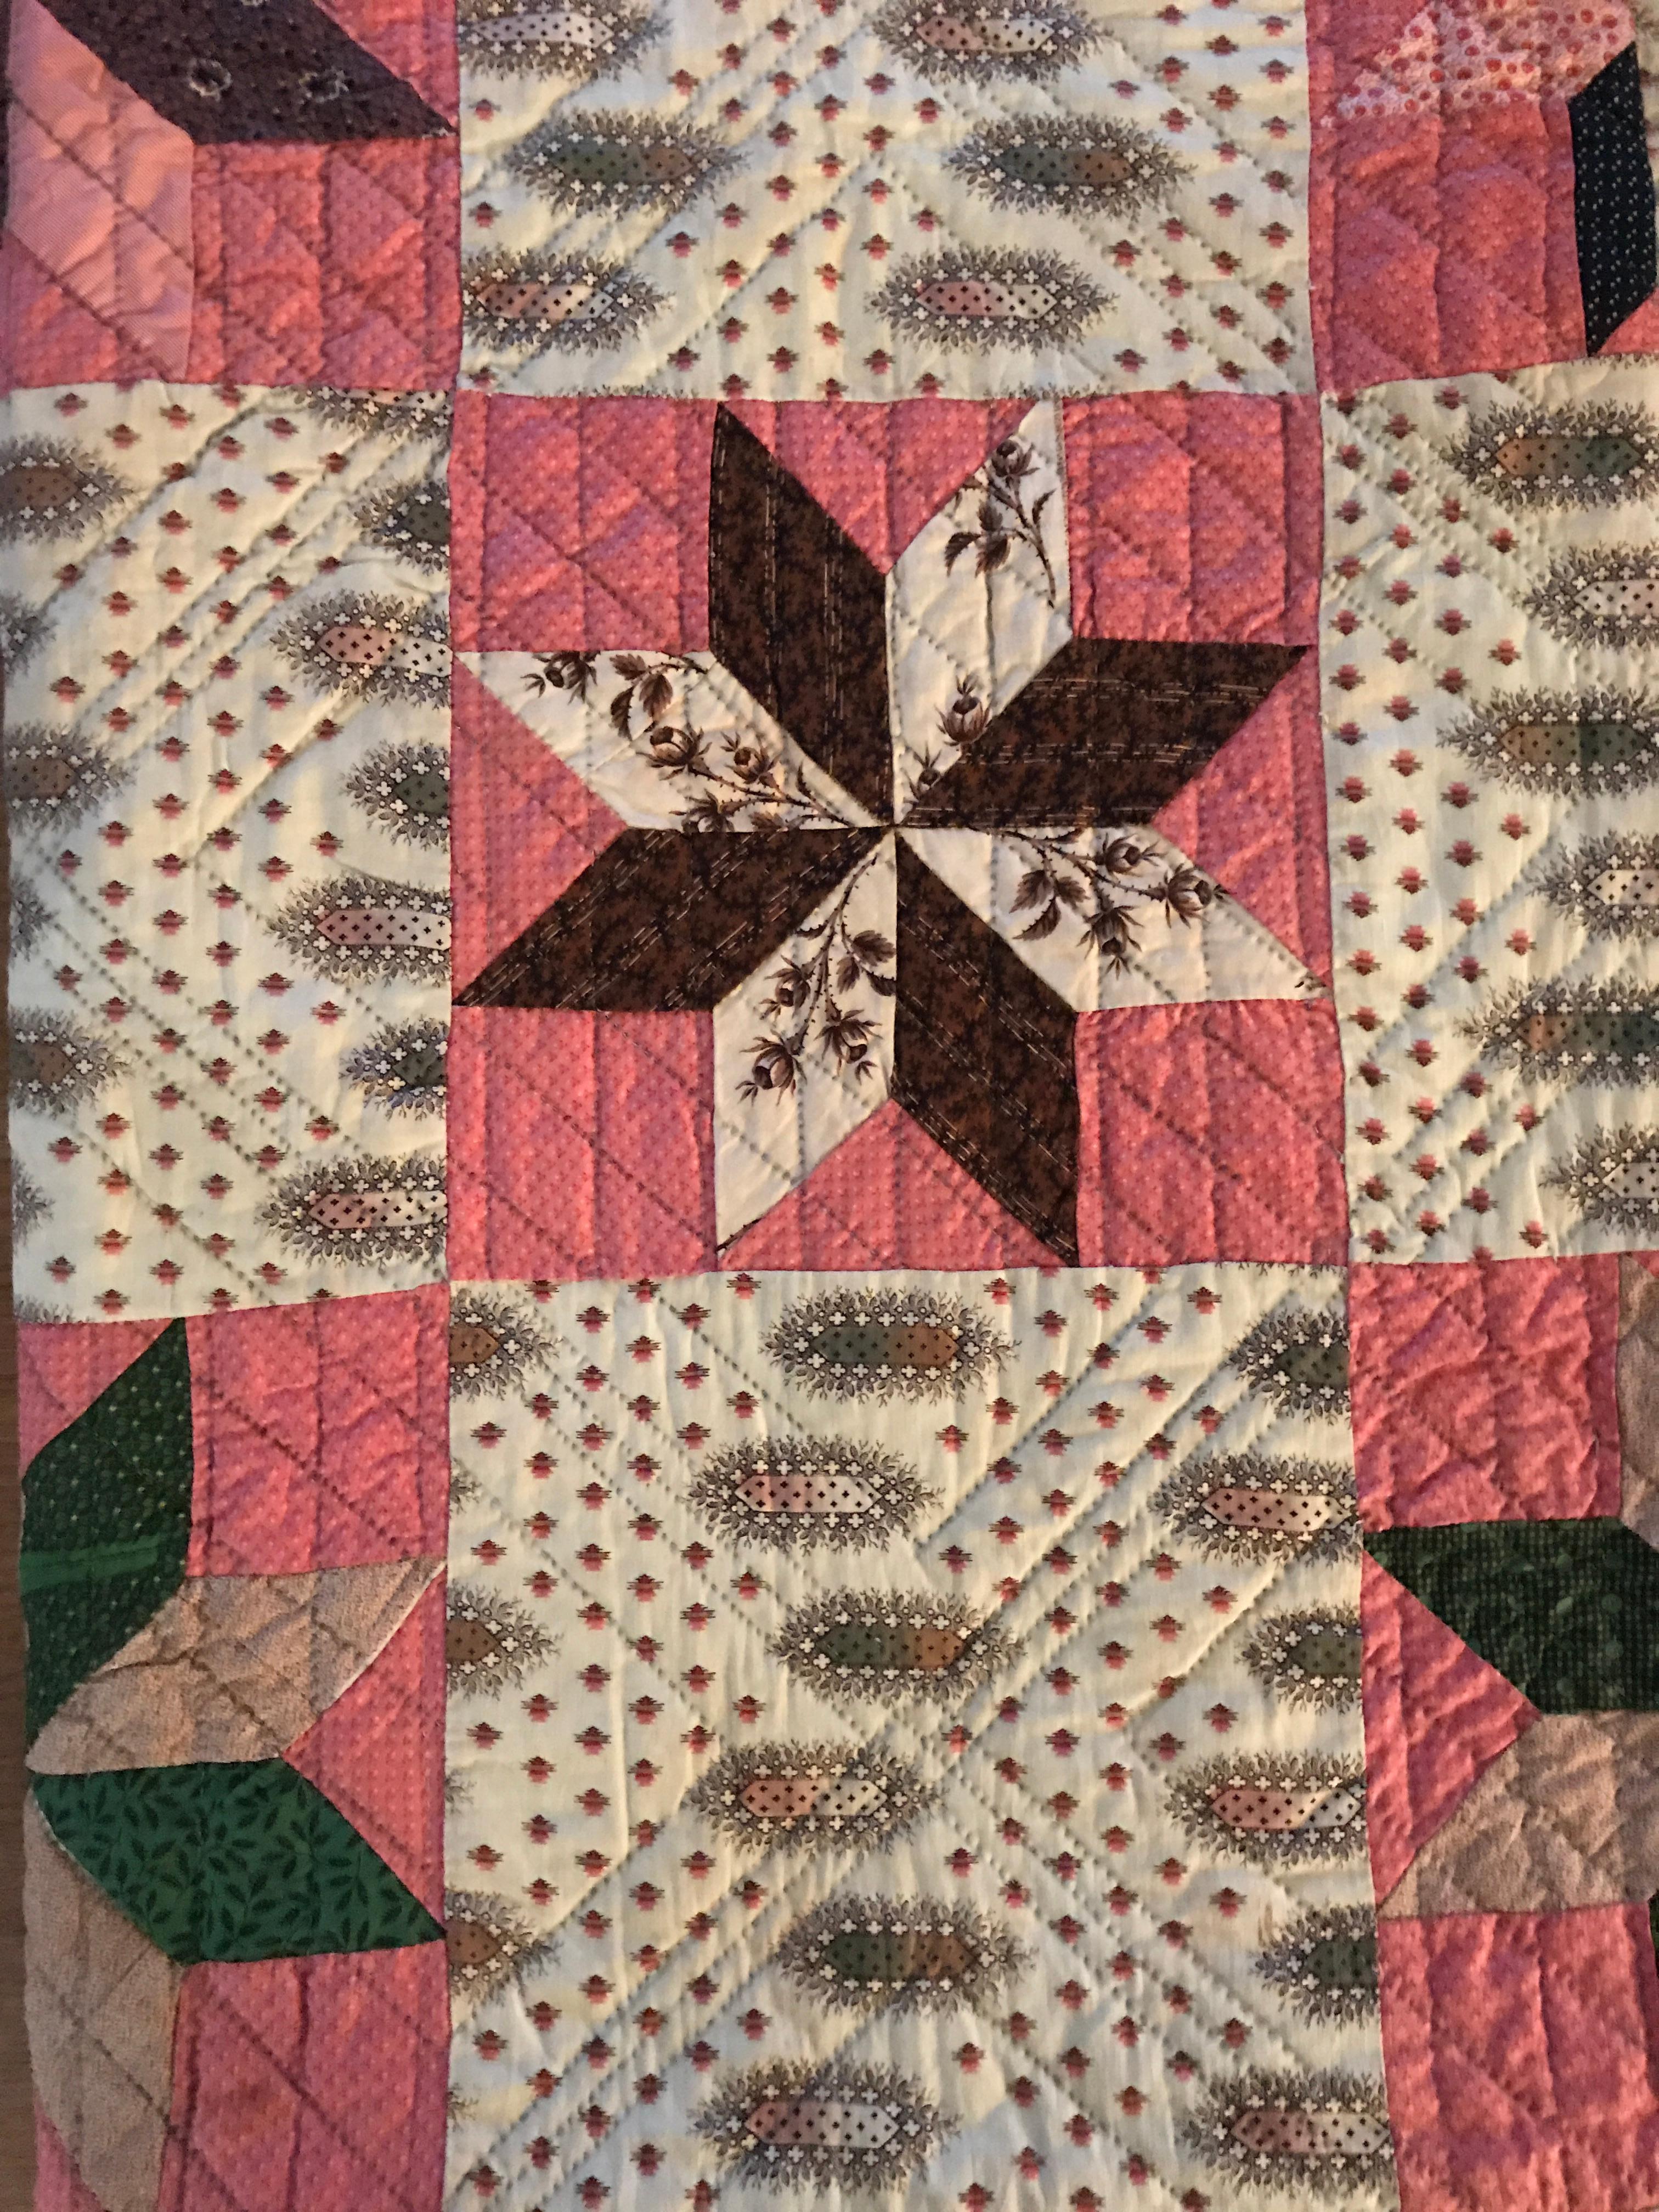 19th century quilt patterns